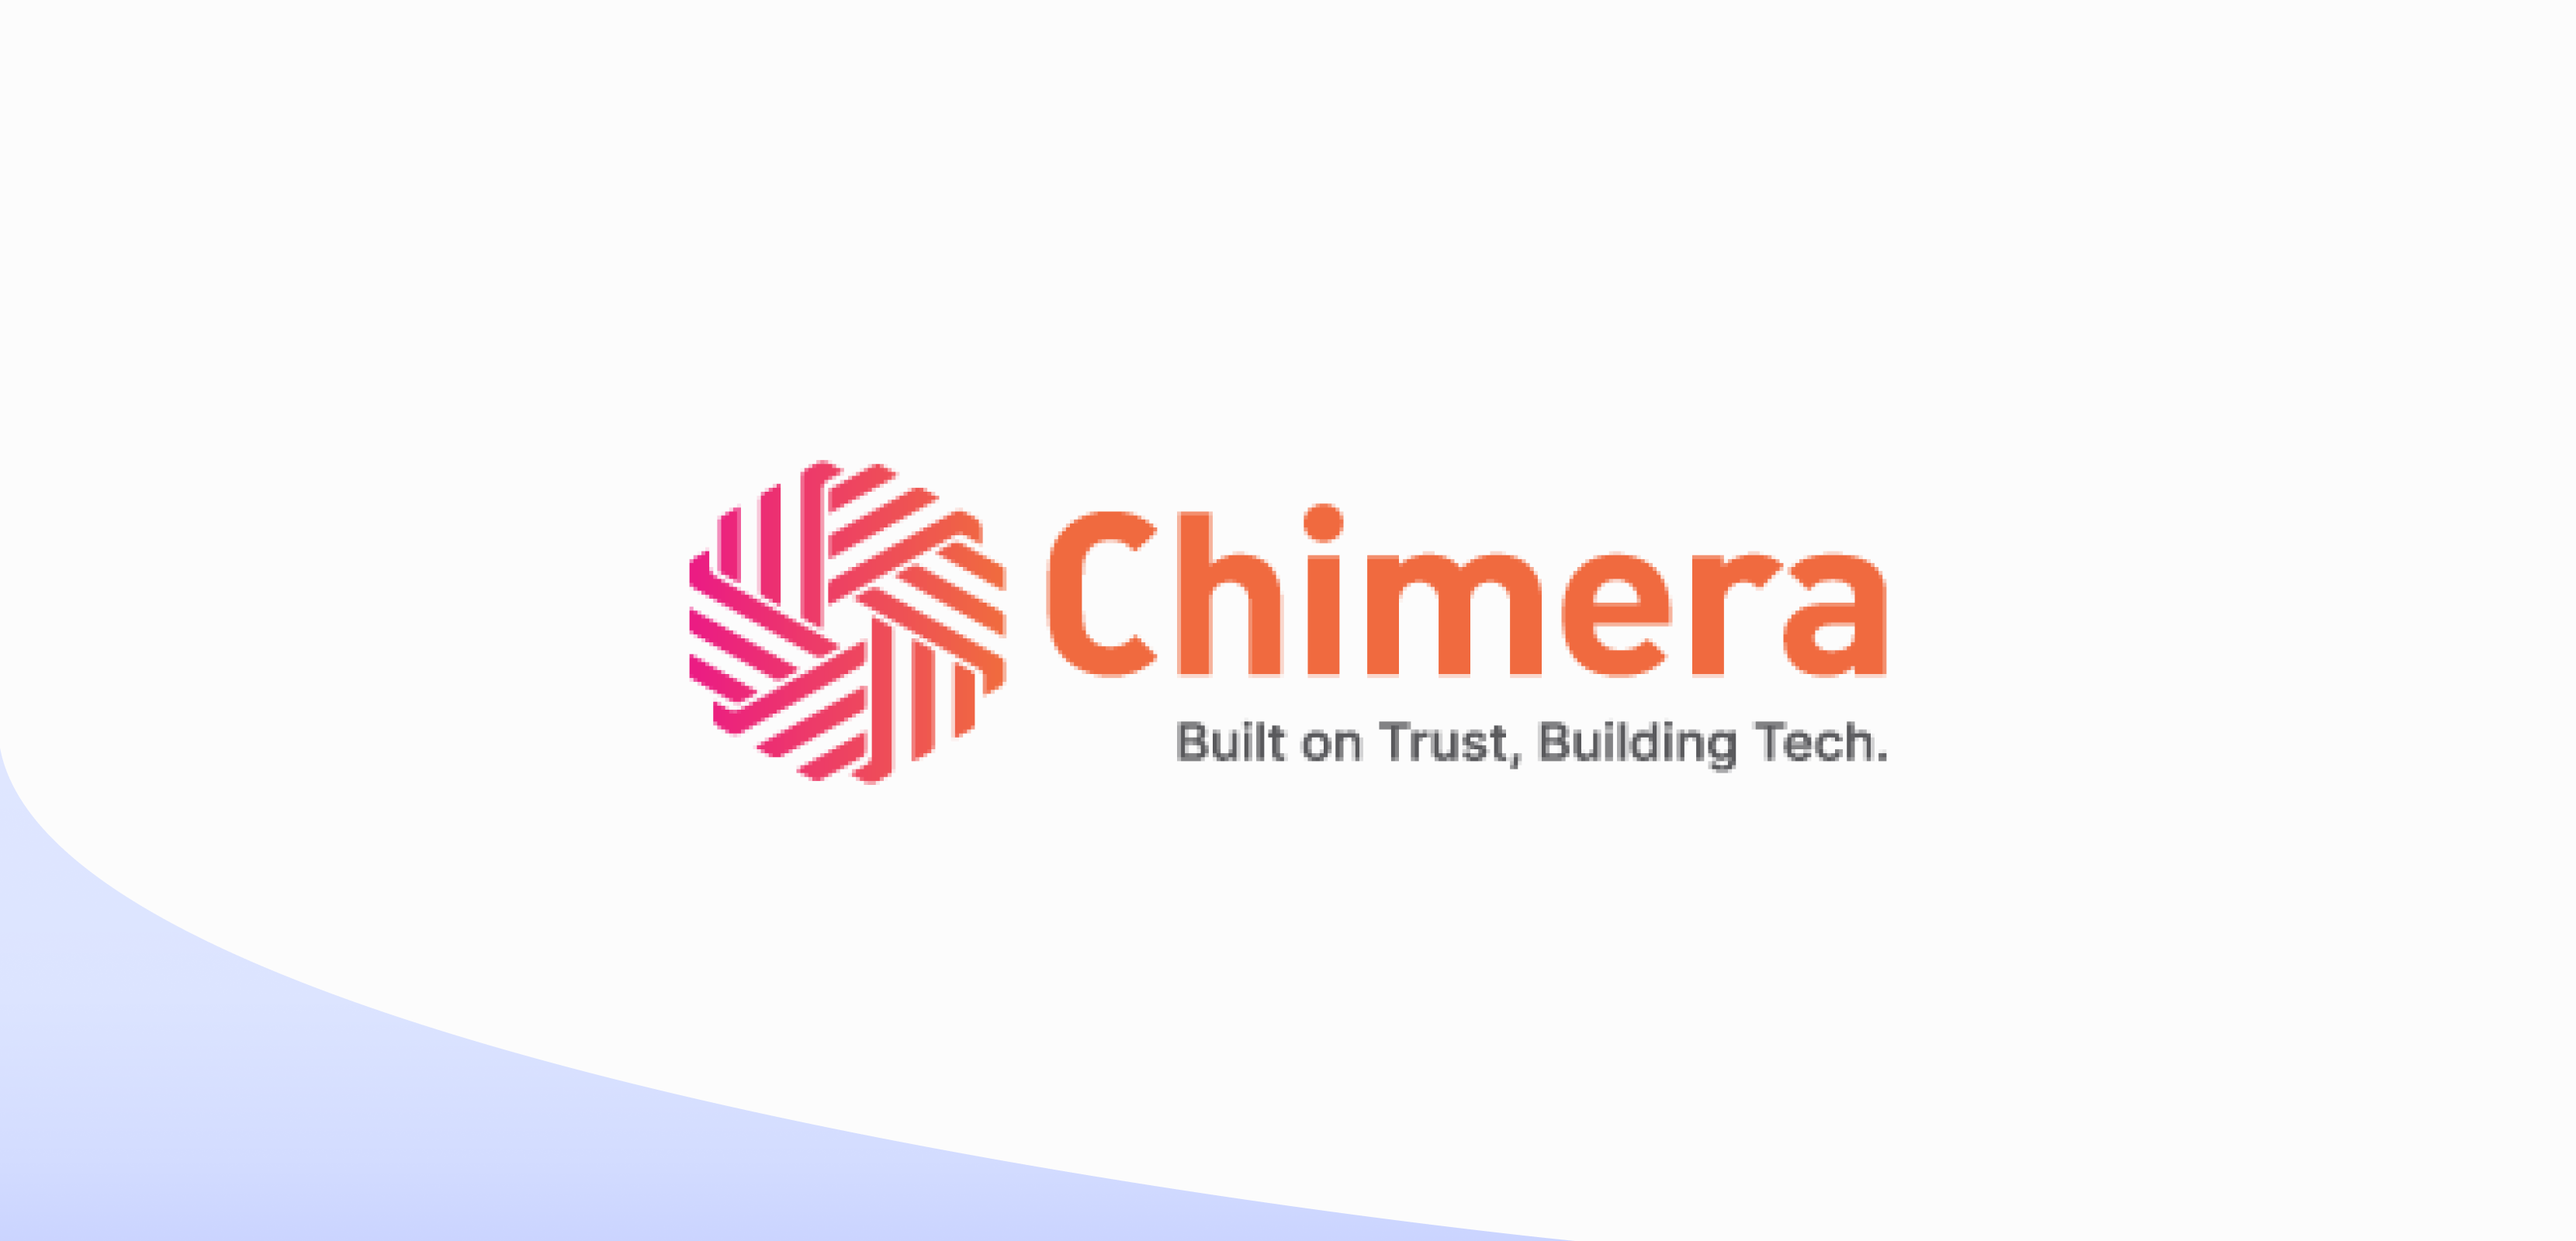 Chimera Technologies